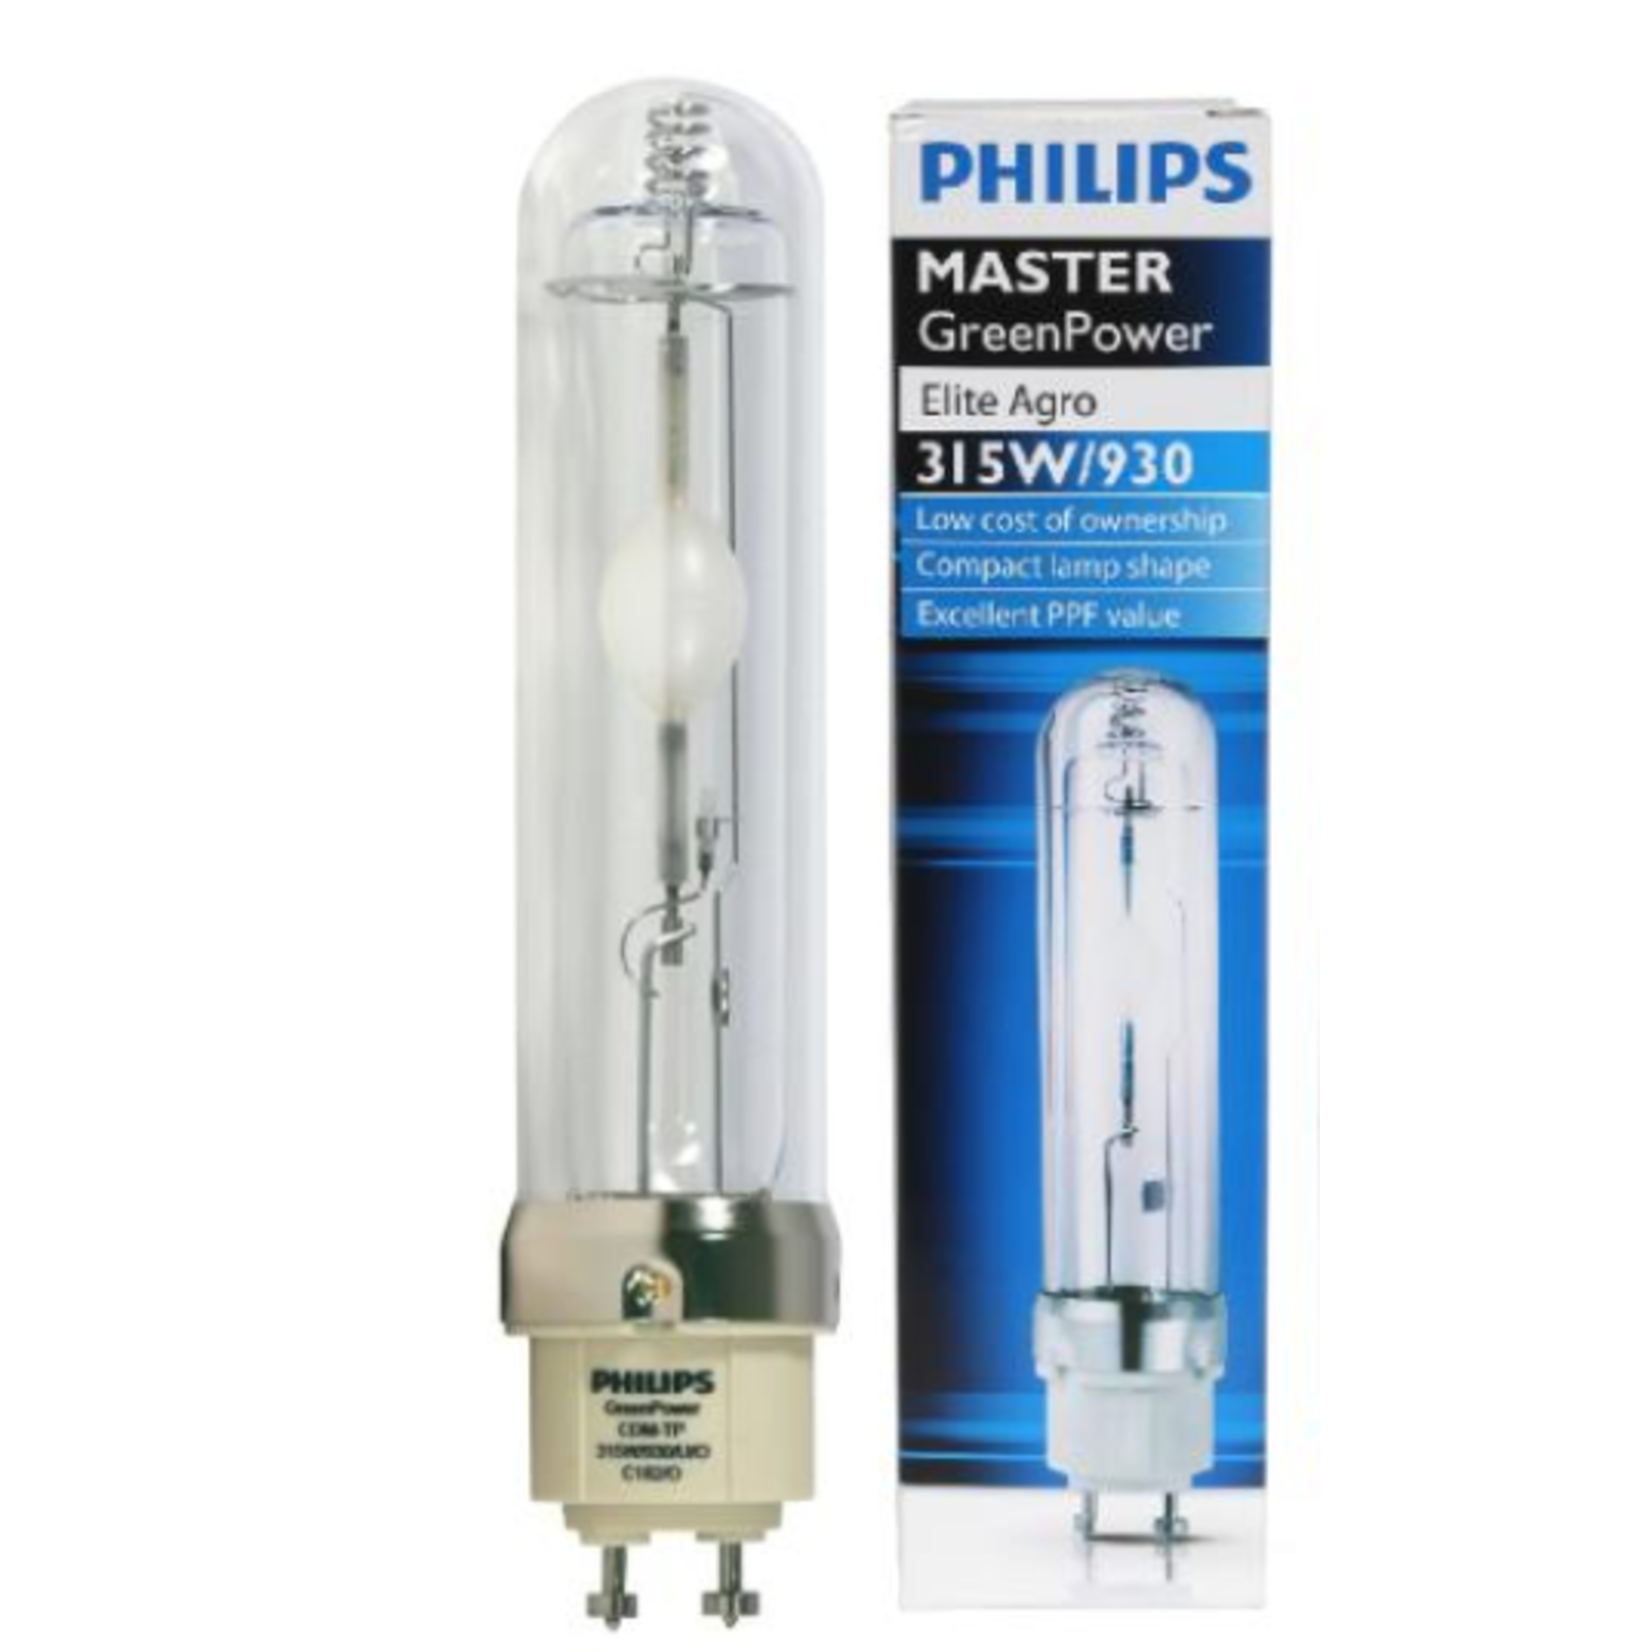 Philips Green Power Master Color CDM Lamp 315 Watt Elite Agr 3100K (Full Spectrum)